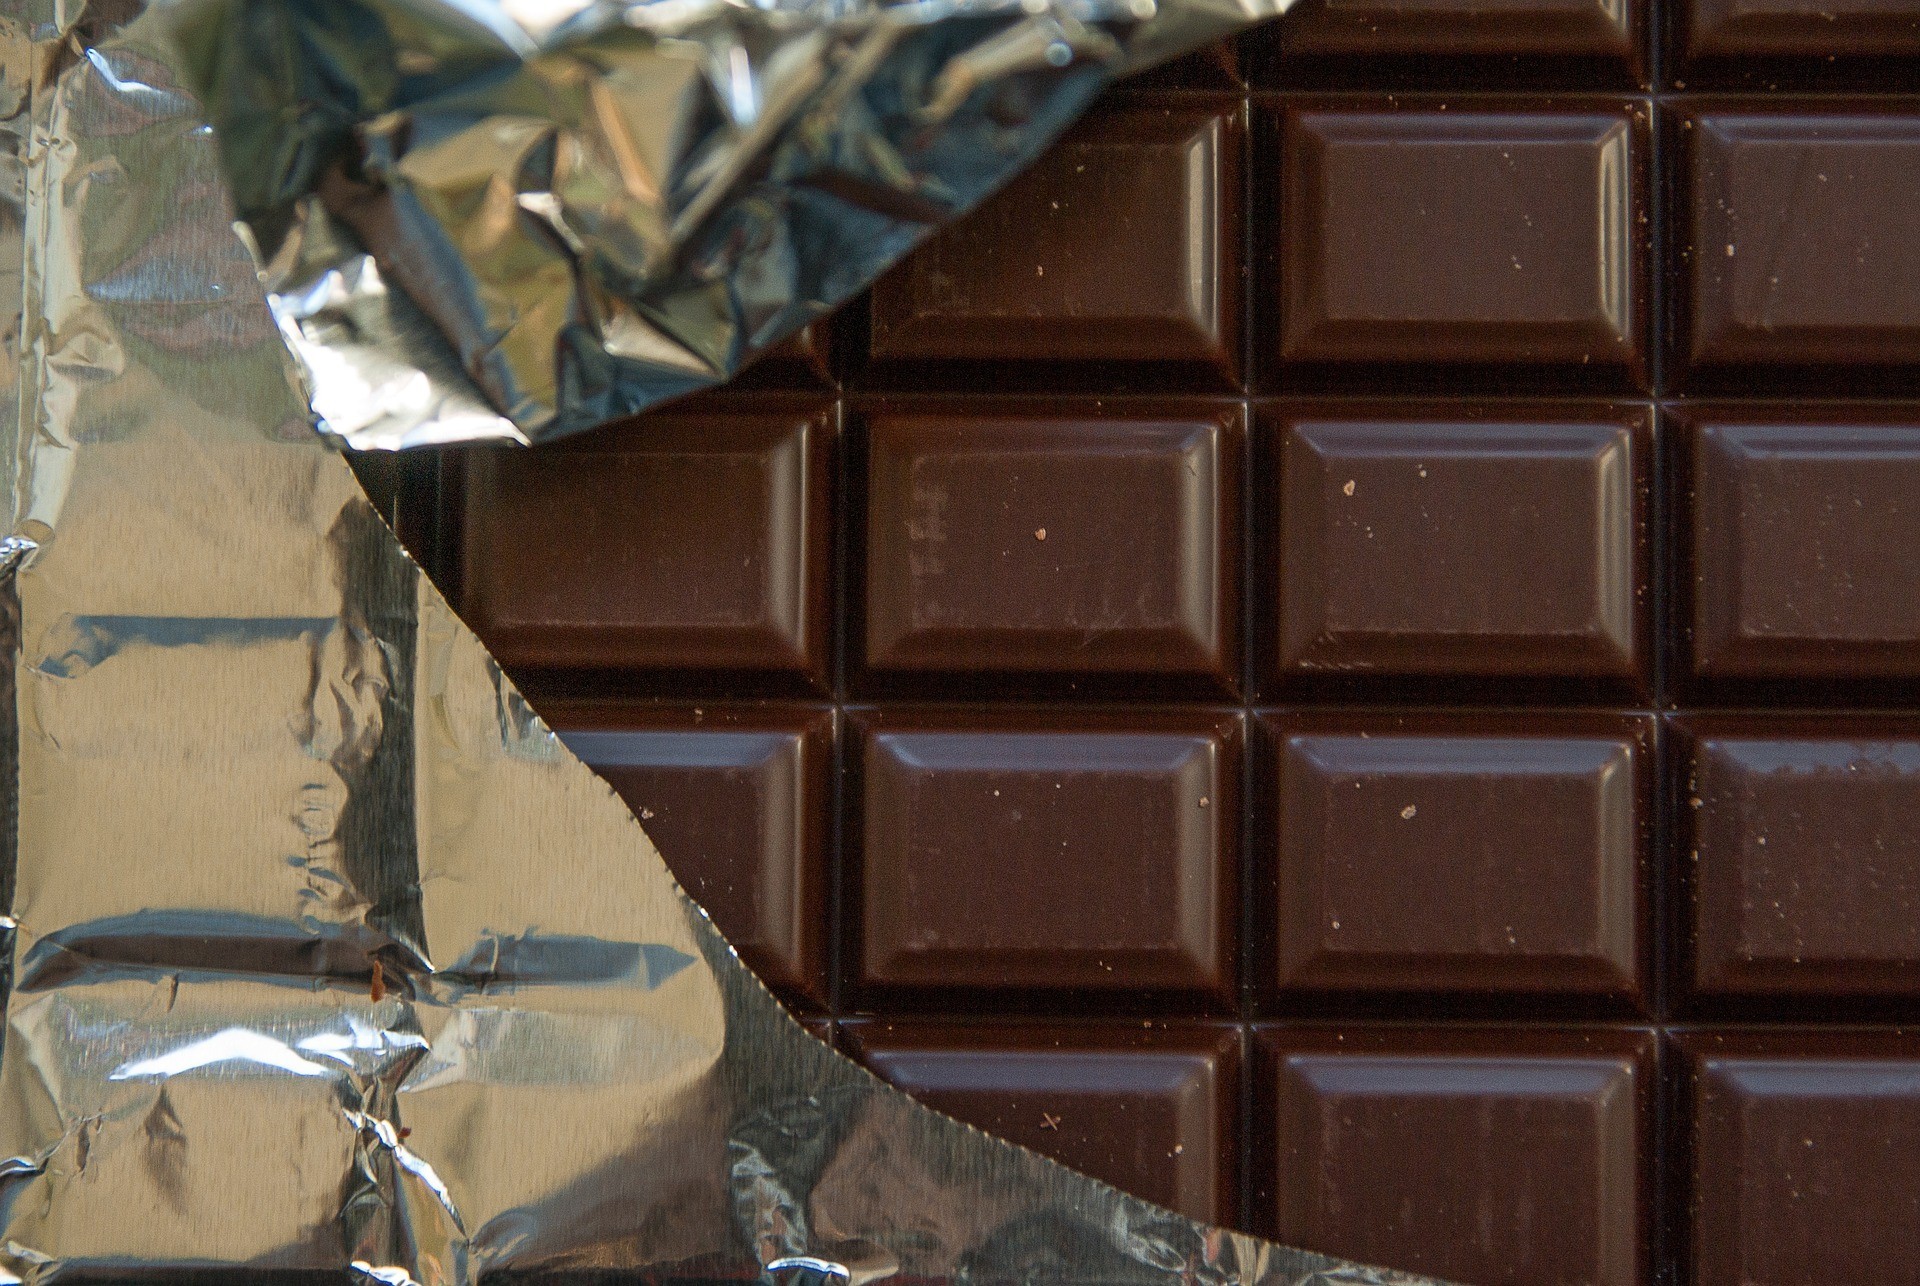 Έρευνα: Τι συμβαίνει με τις μαύρες σοκολάτες – Ποιες βρέθηκαν με υψηλά ποσοστά μόλυβδου και καδμίου